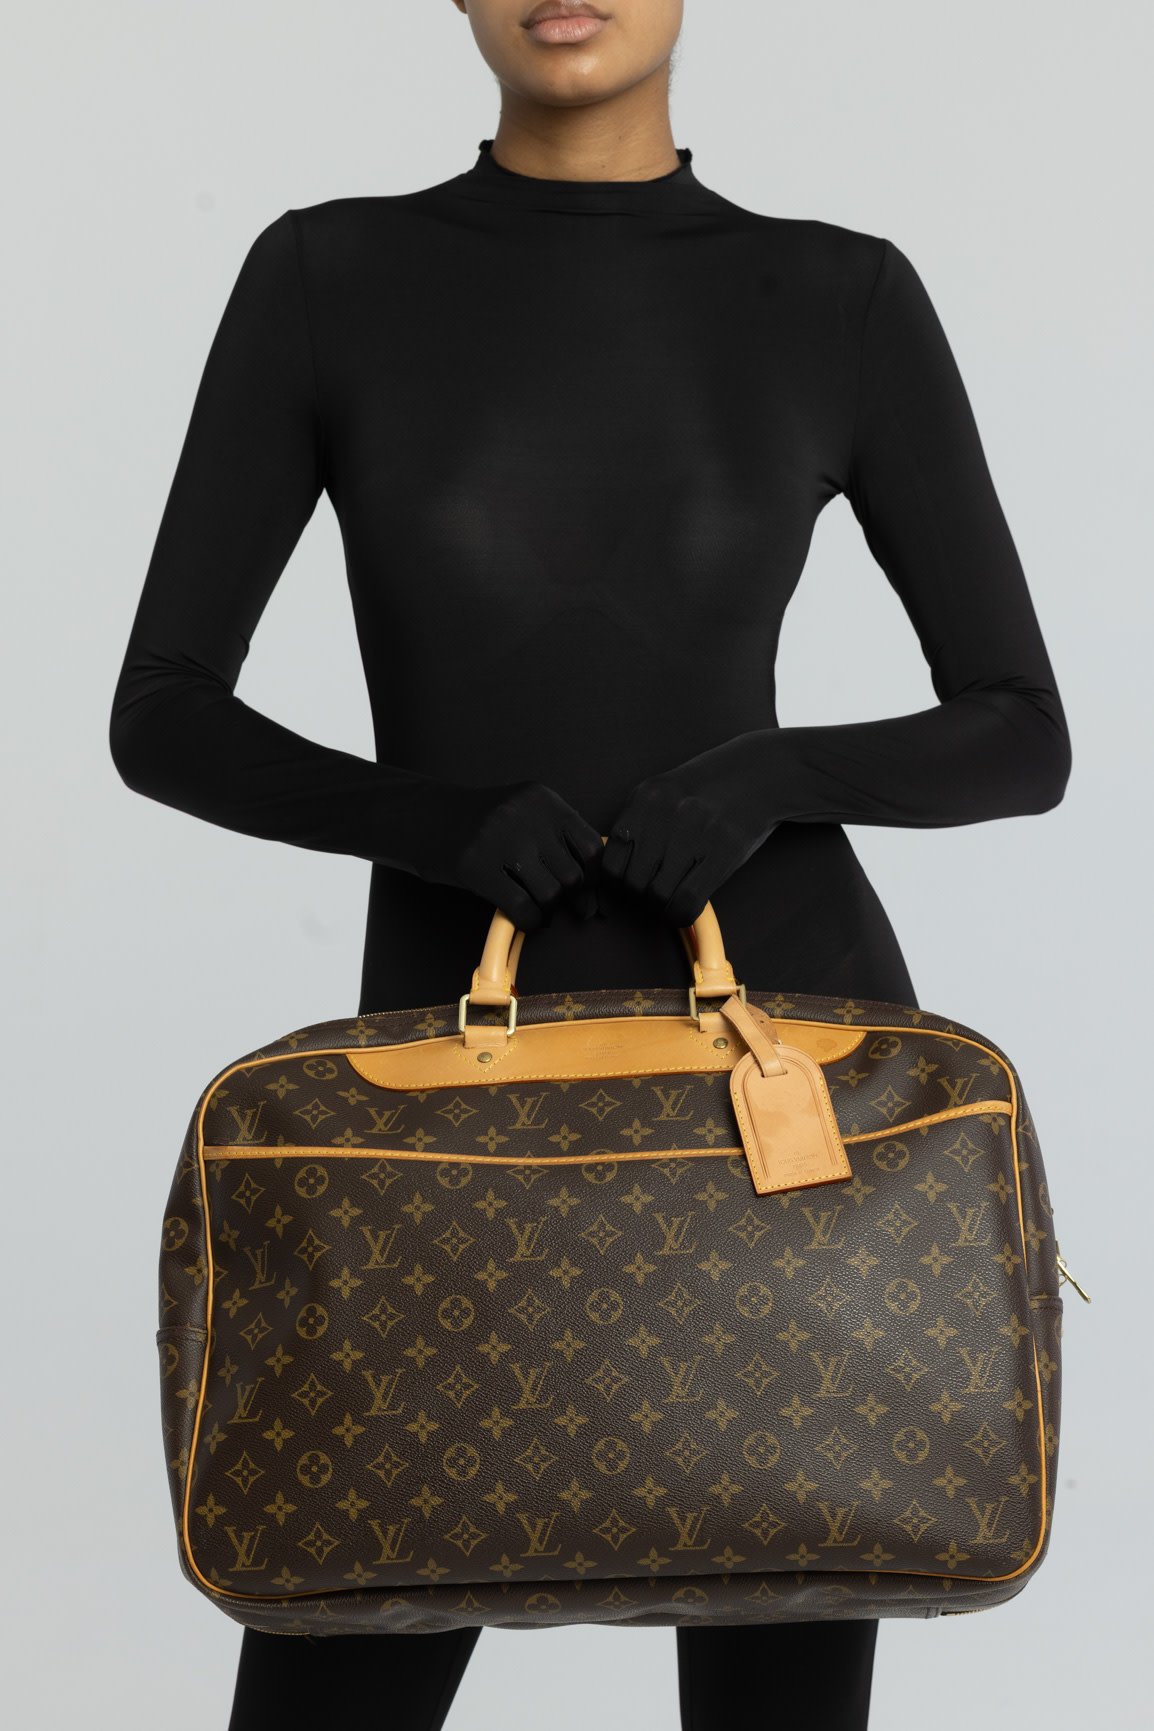 Louis Vuitton Monogram Canvas Alize 24 Heures Soft Suitcase Louis